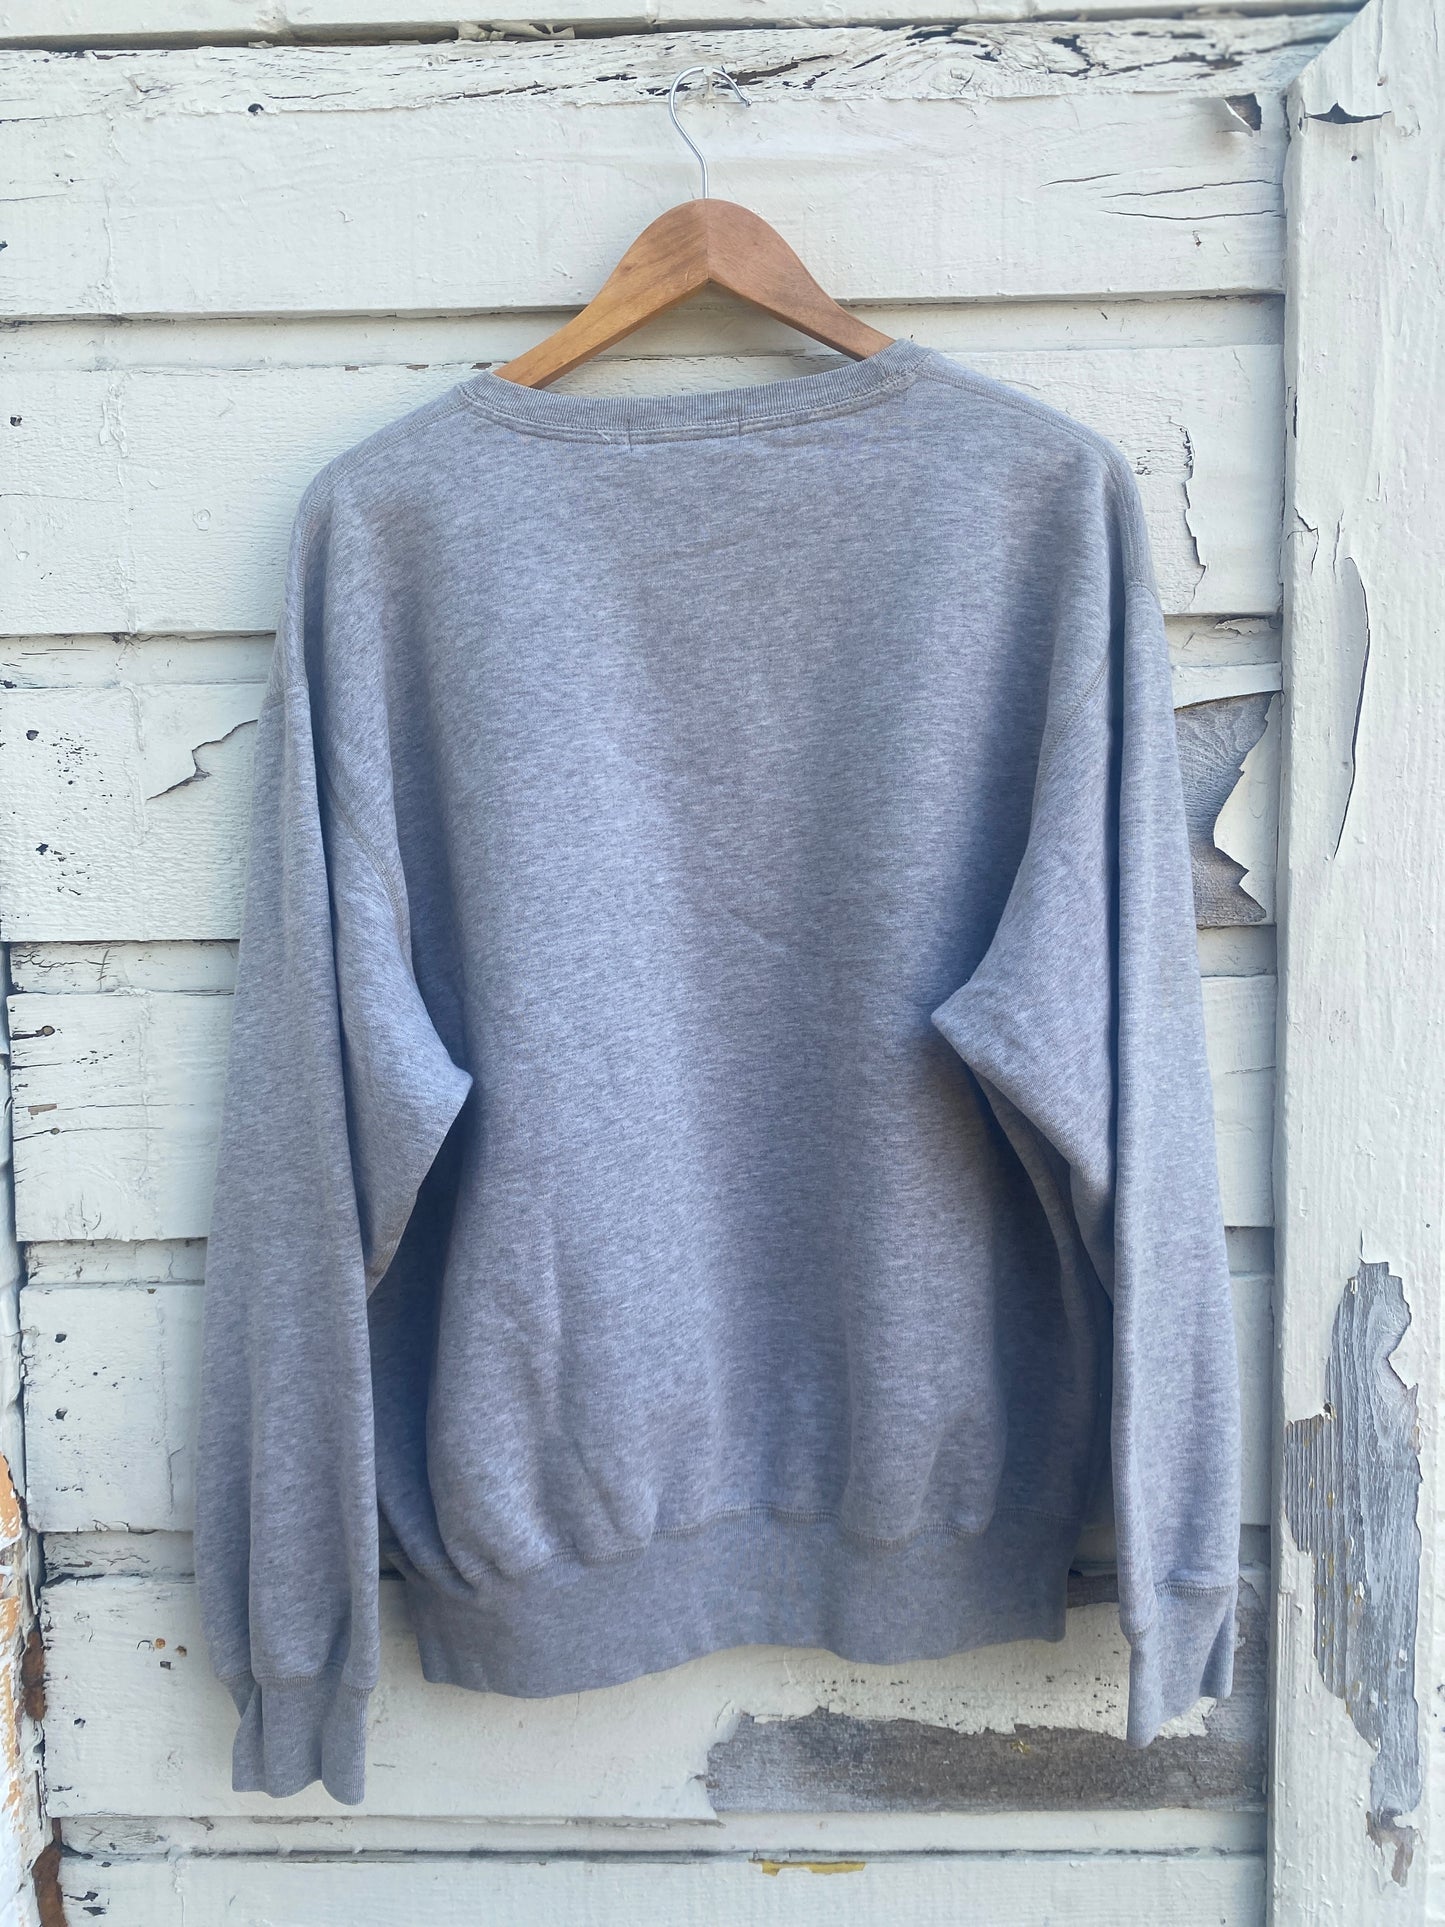 Gray polo sweatshirt large